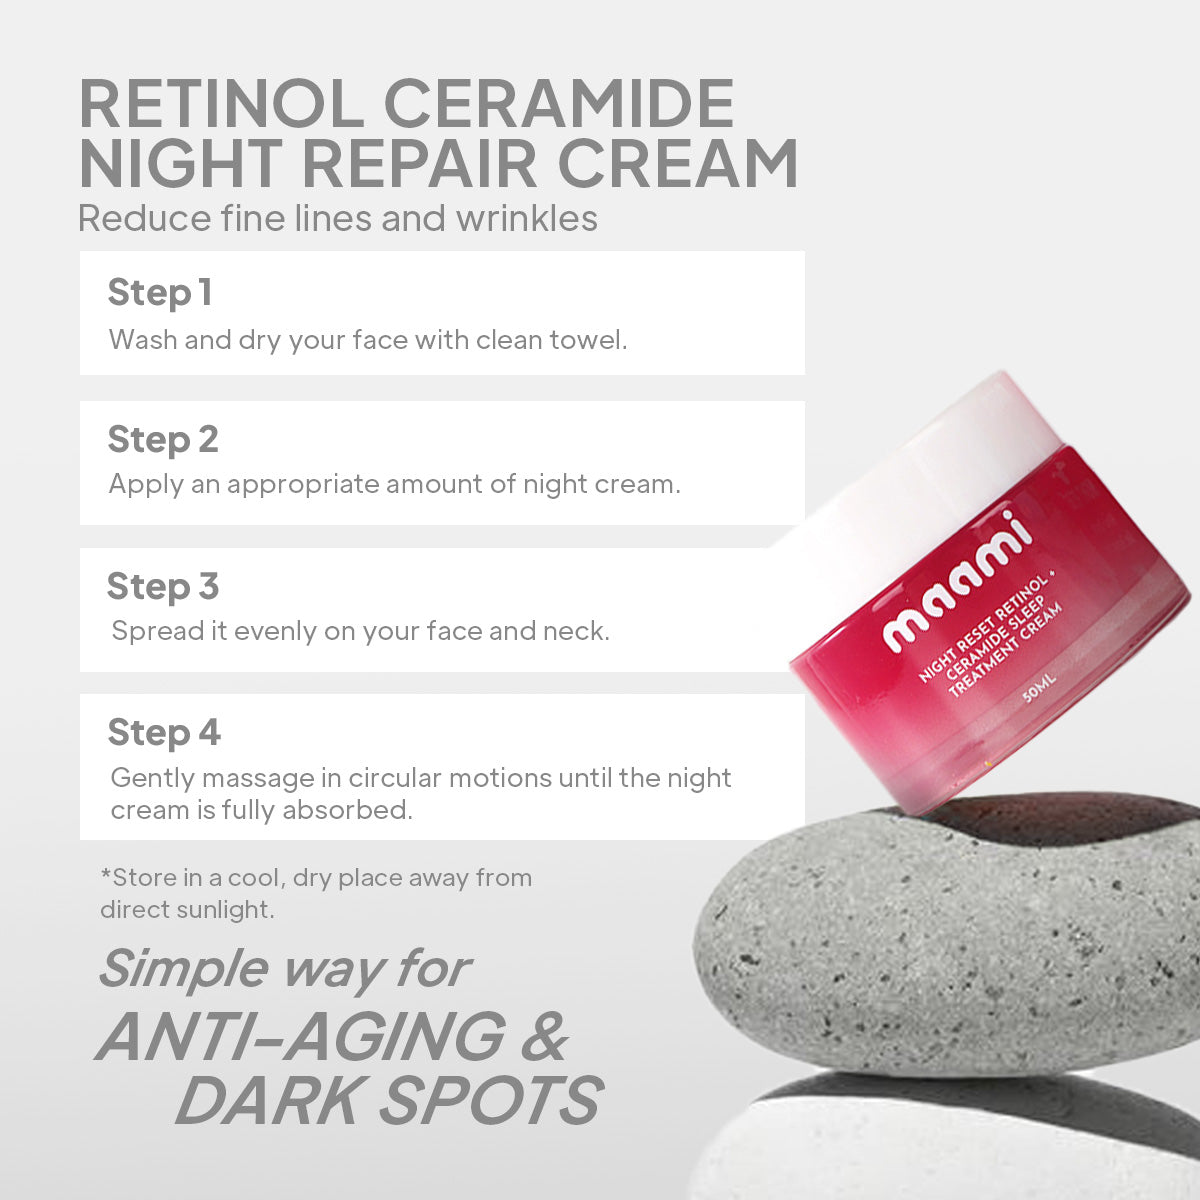 Retinol Ceramide Night Repair Cream